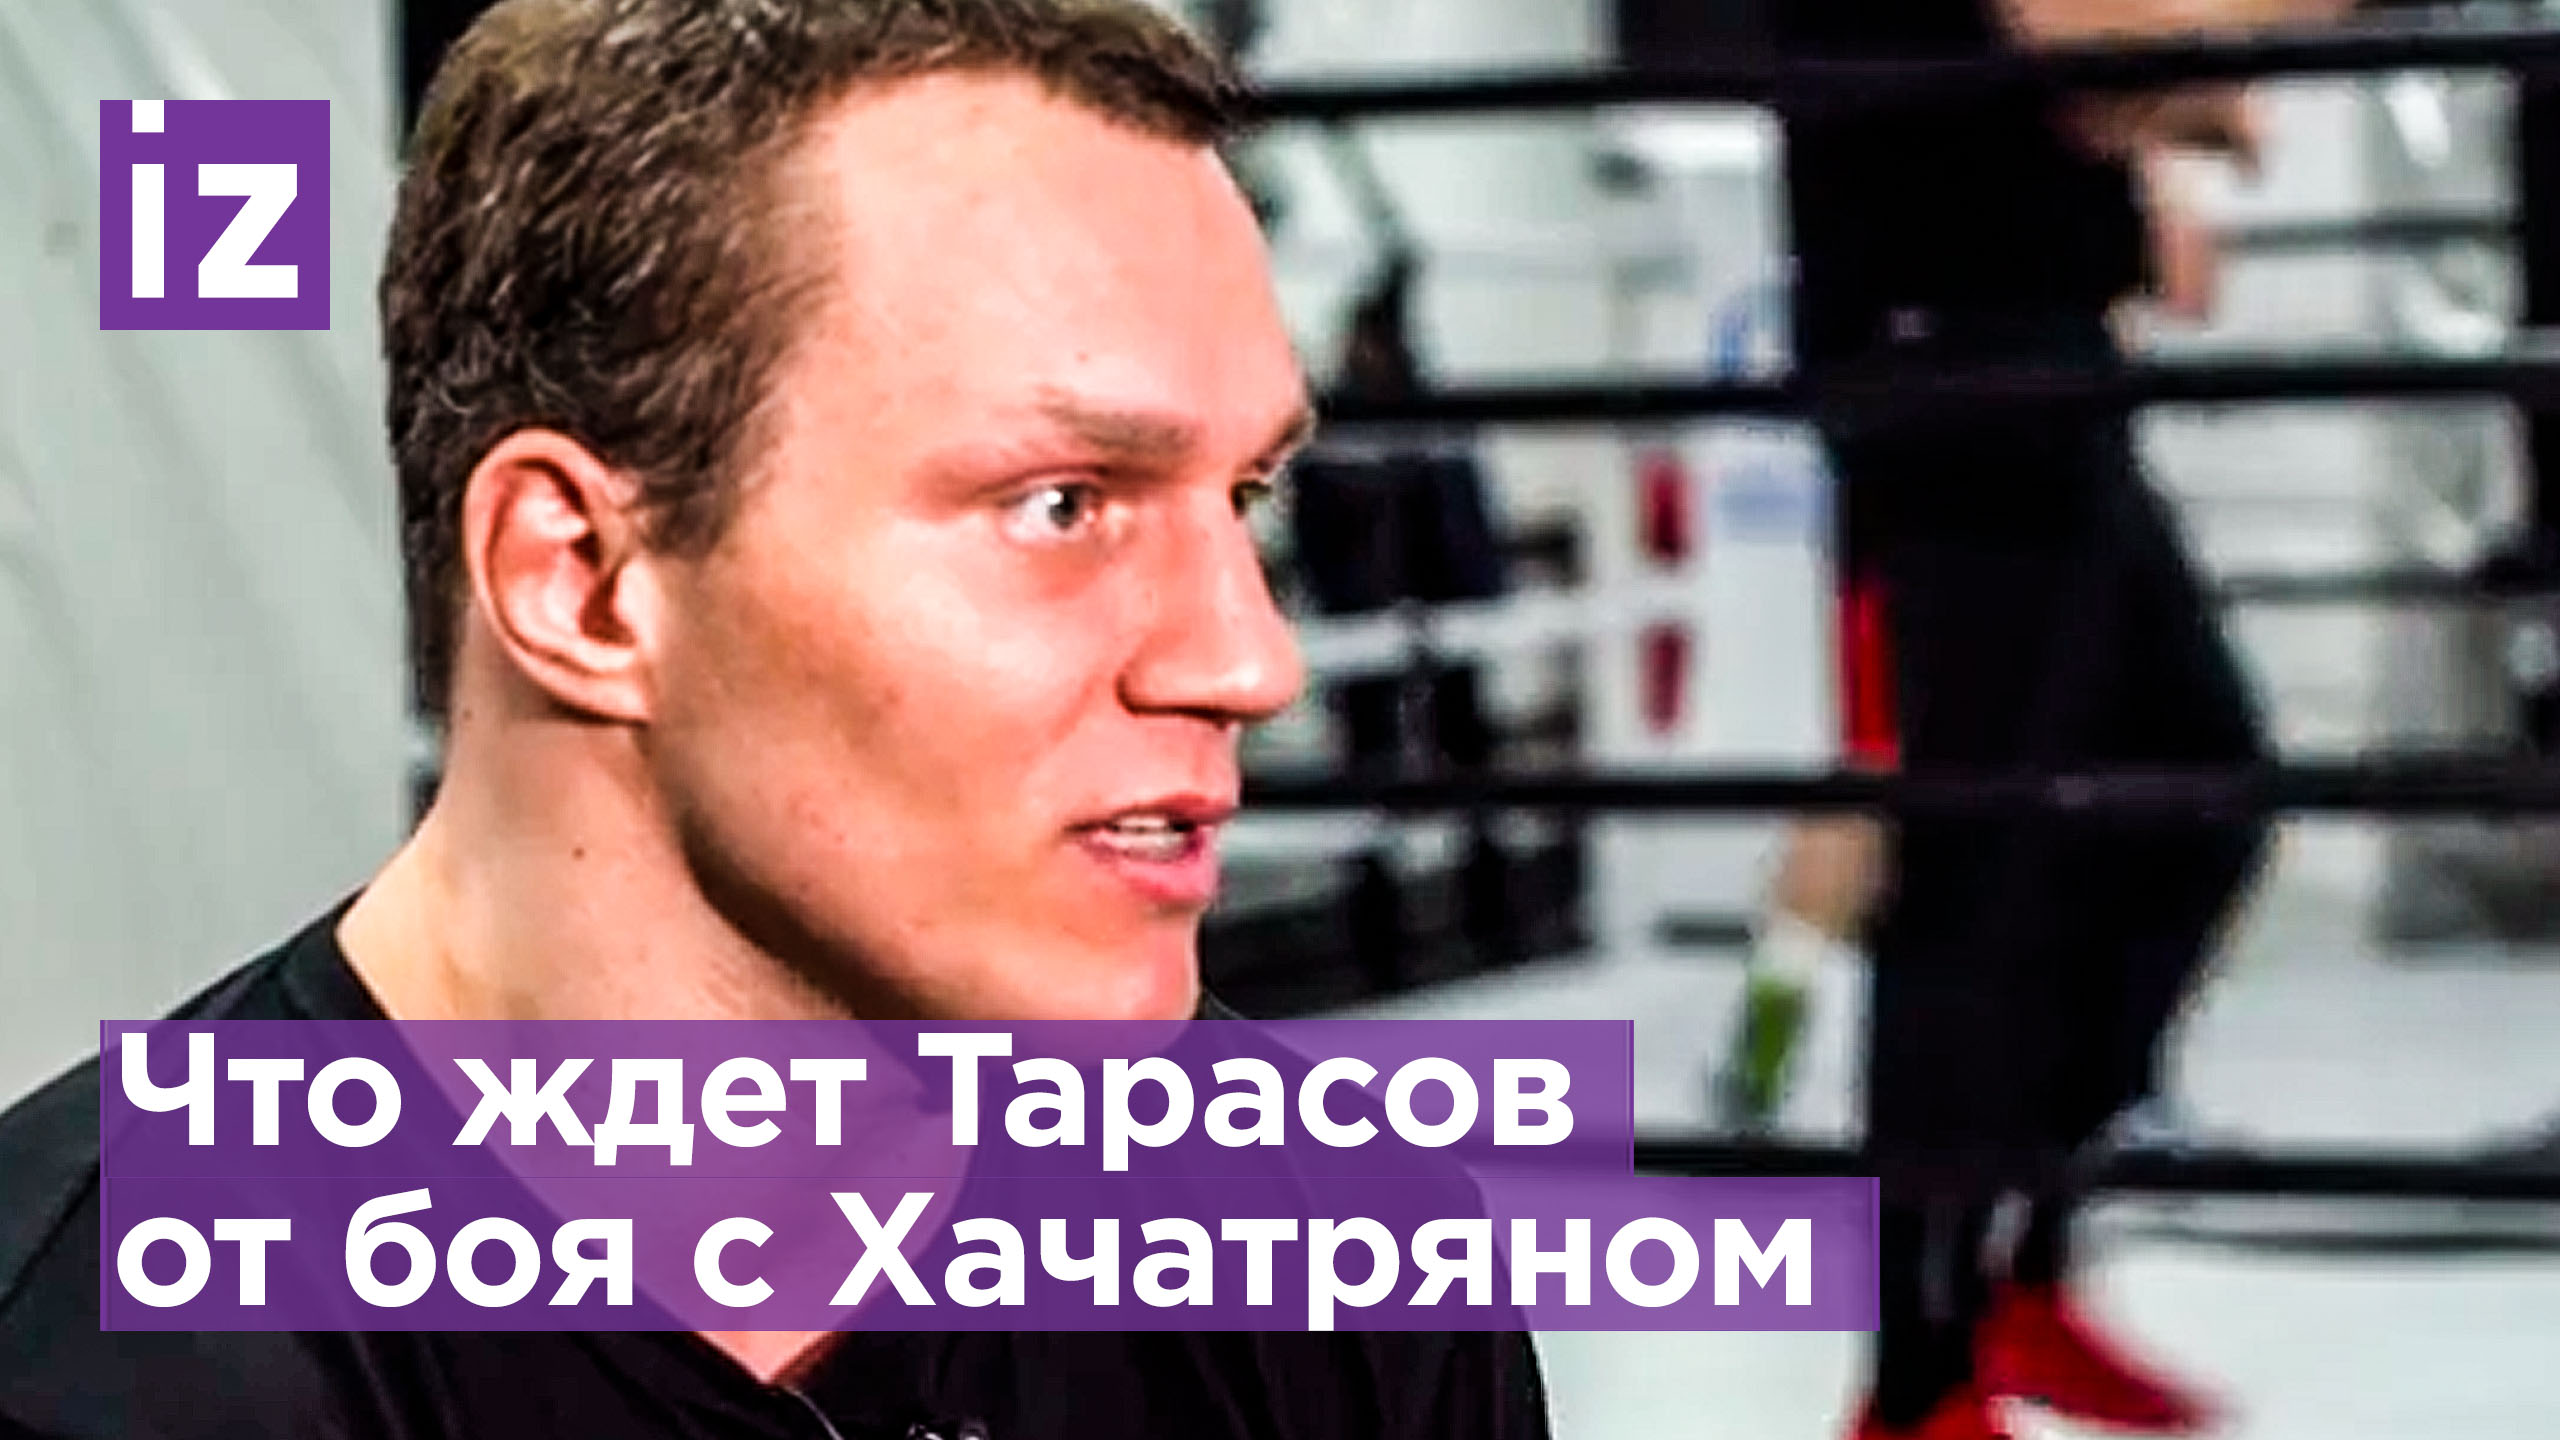 Тарасов сказал, что участие в поединке по правилам кикбоксинга — это эксперимент / Известия